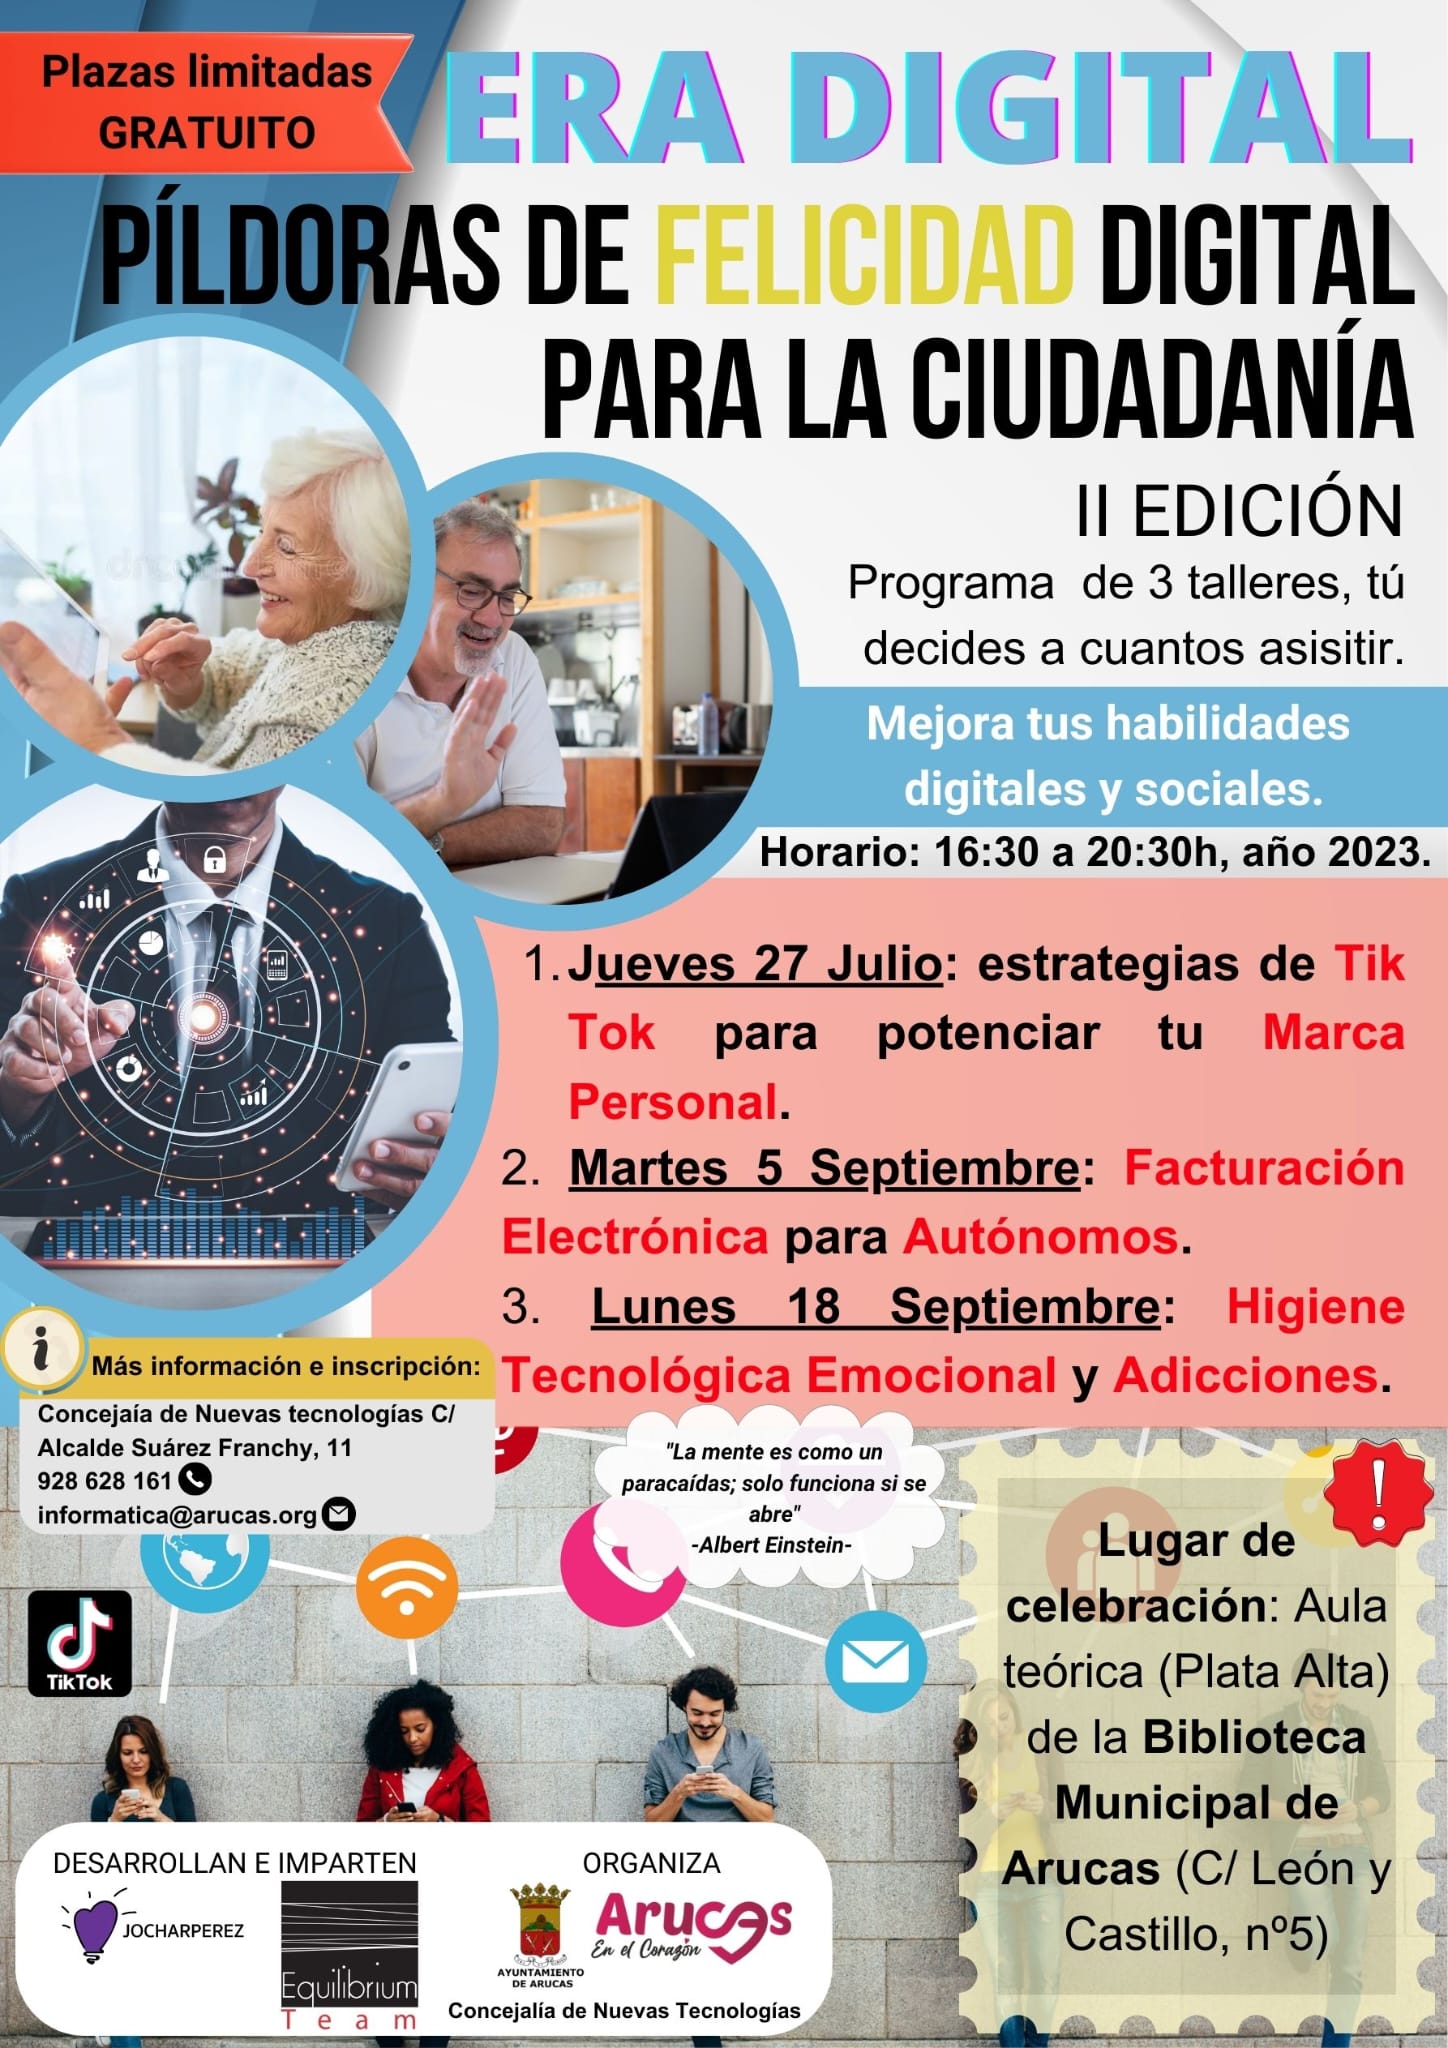 Arucas programa 3 talleres gratuitos para mejorar las habilidades digitales y sociales de profesionales y de la ciudadanía en general